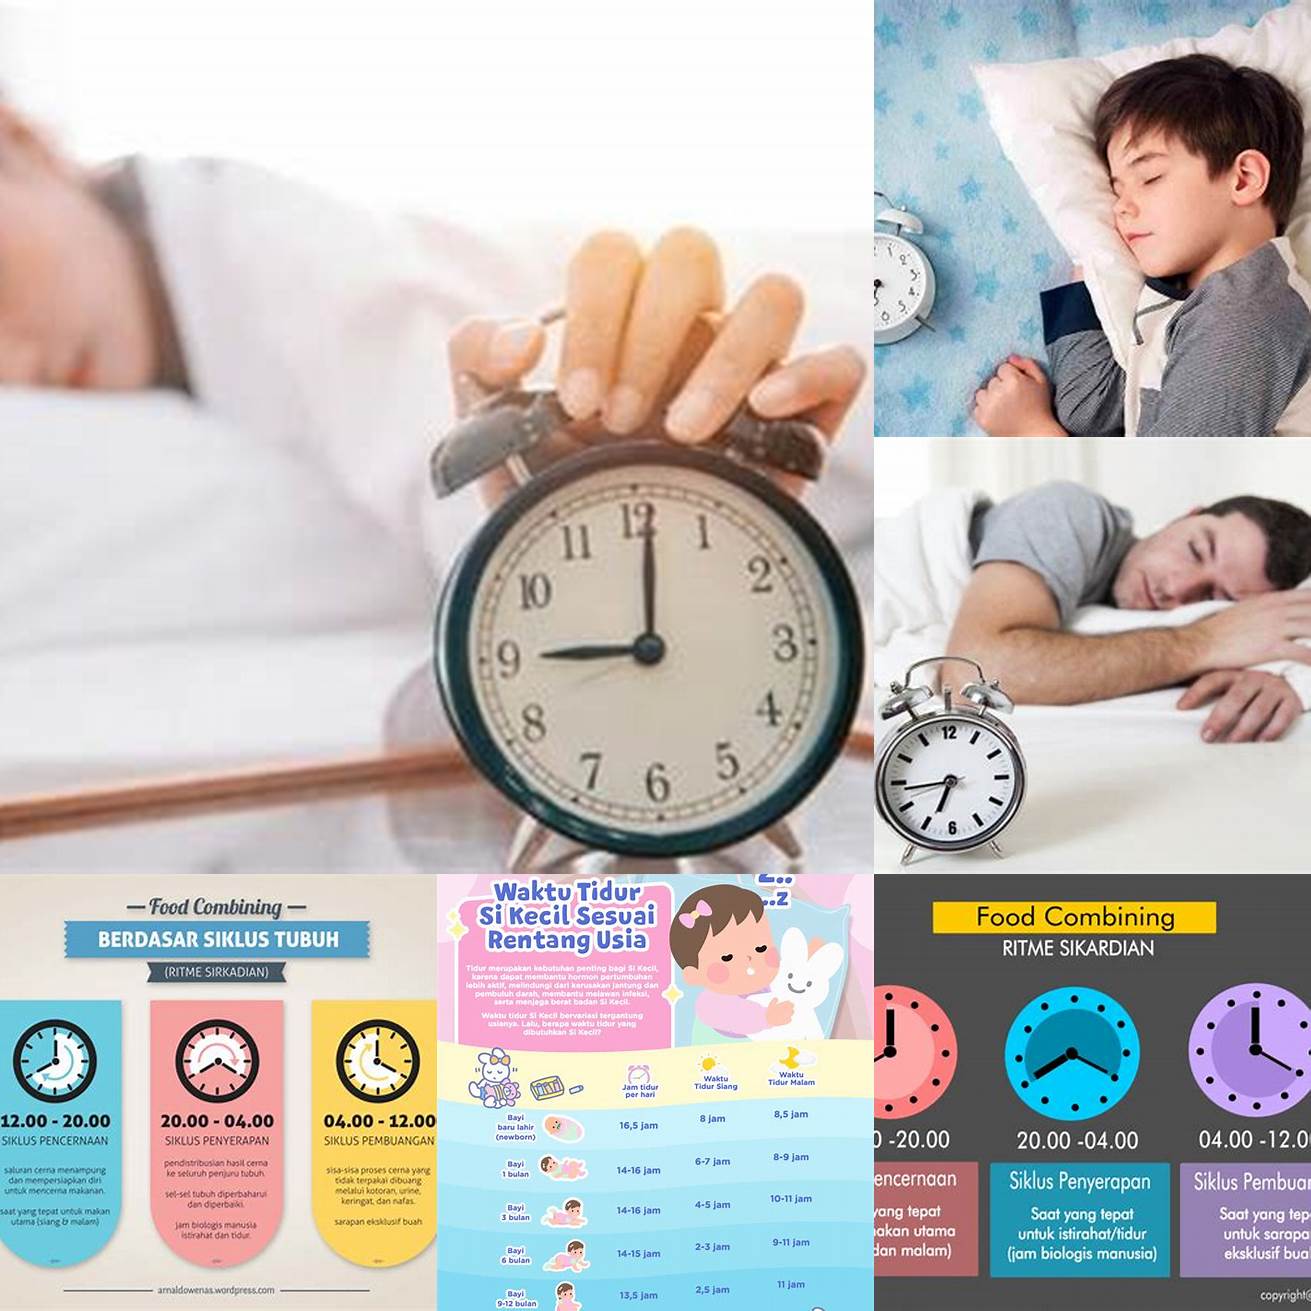 Membuat jadwal tidur yang teratur bisa membantu tubuh untuk menyesuaikan ritme sirkadian atau jam biologis